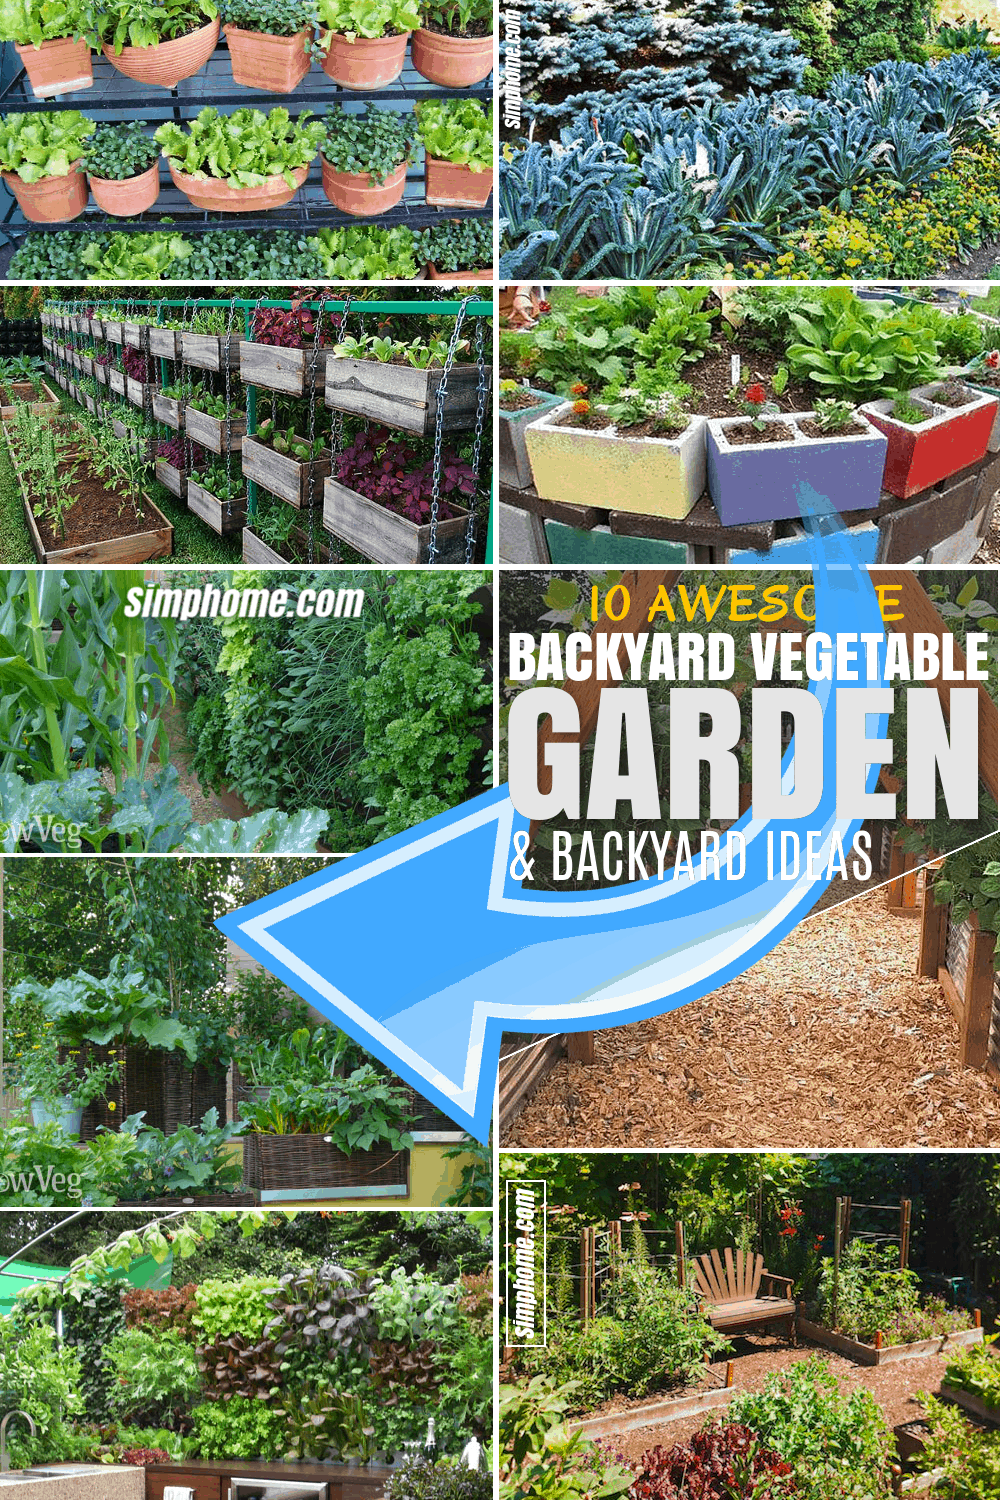 SIMPHOME.COM 10 Backyard Vegetable Garden Ideas FEATURED PINTEREST